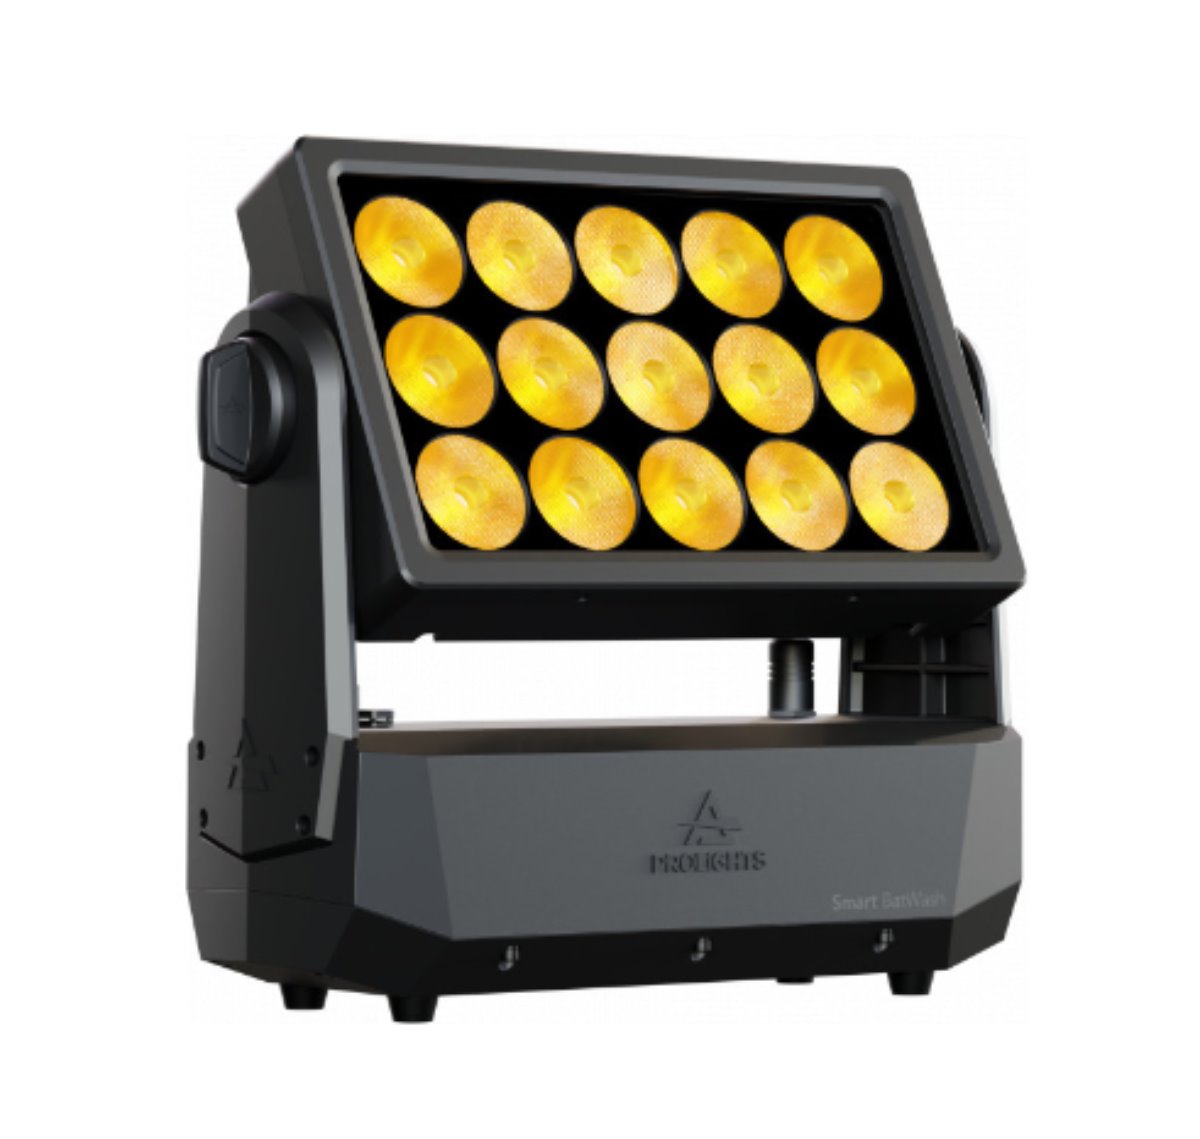 SmartBat Wash el proyector Wash LED de Prolights, imprescindible para giras o eventos corporativos